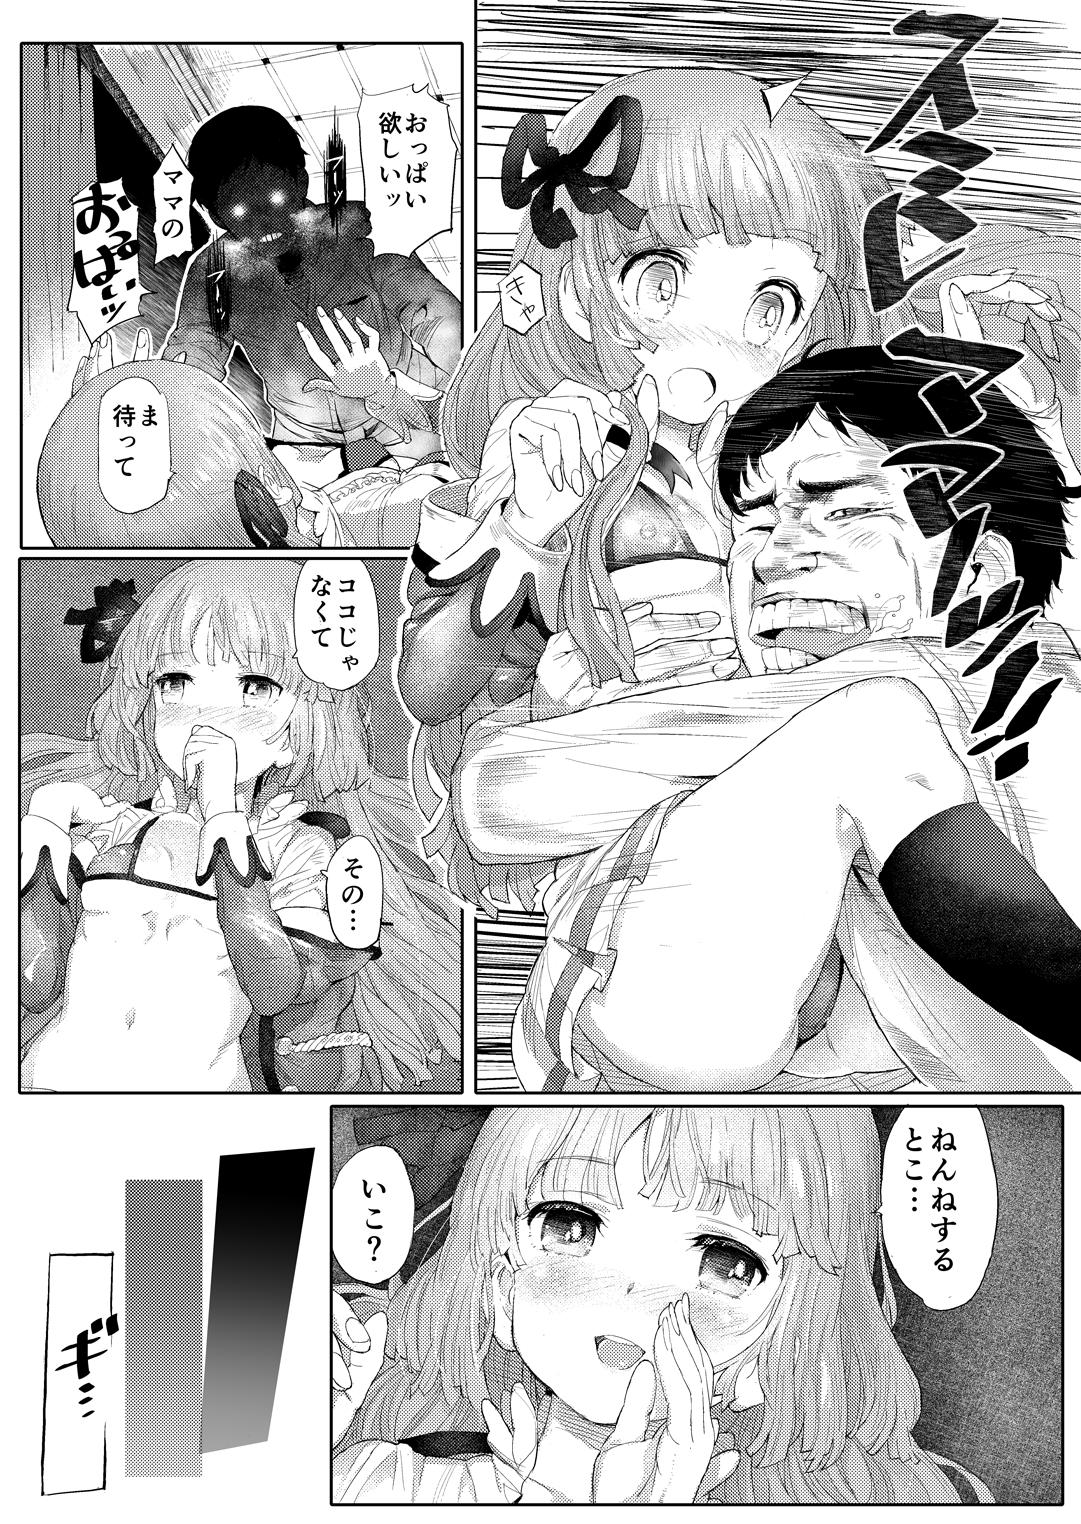 Tit MG+OO SP - Aikatsu Caliente - Page 7